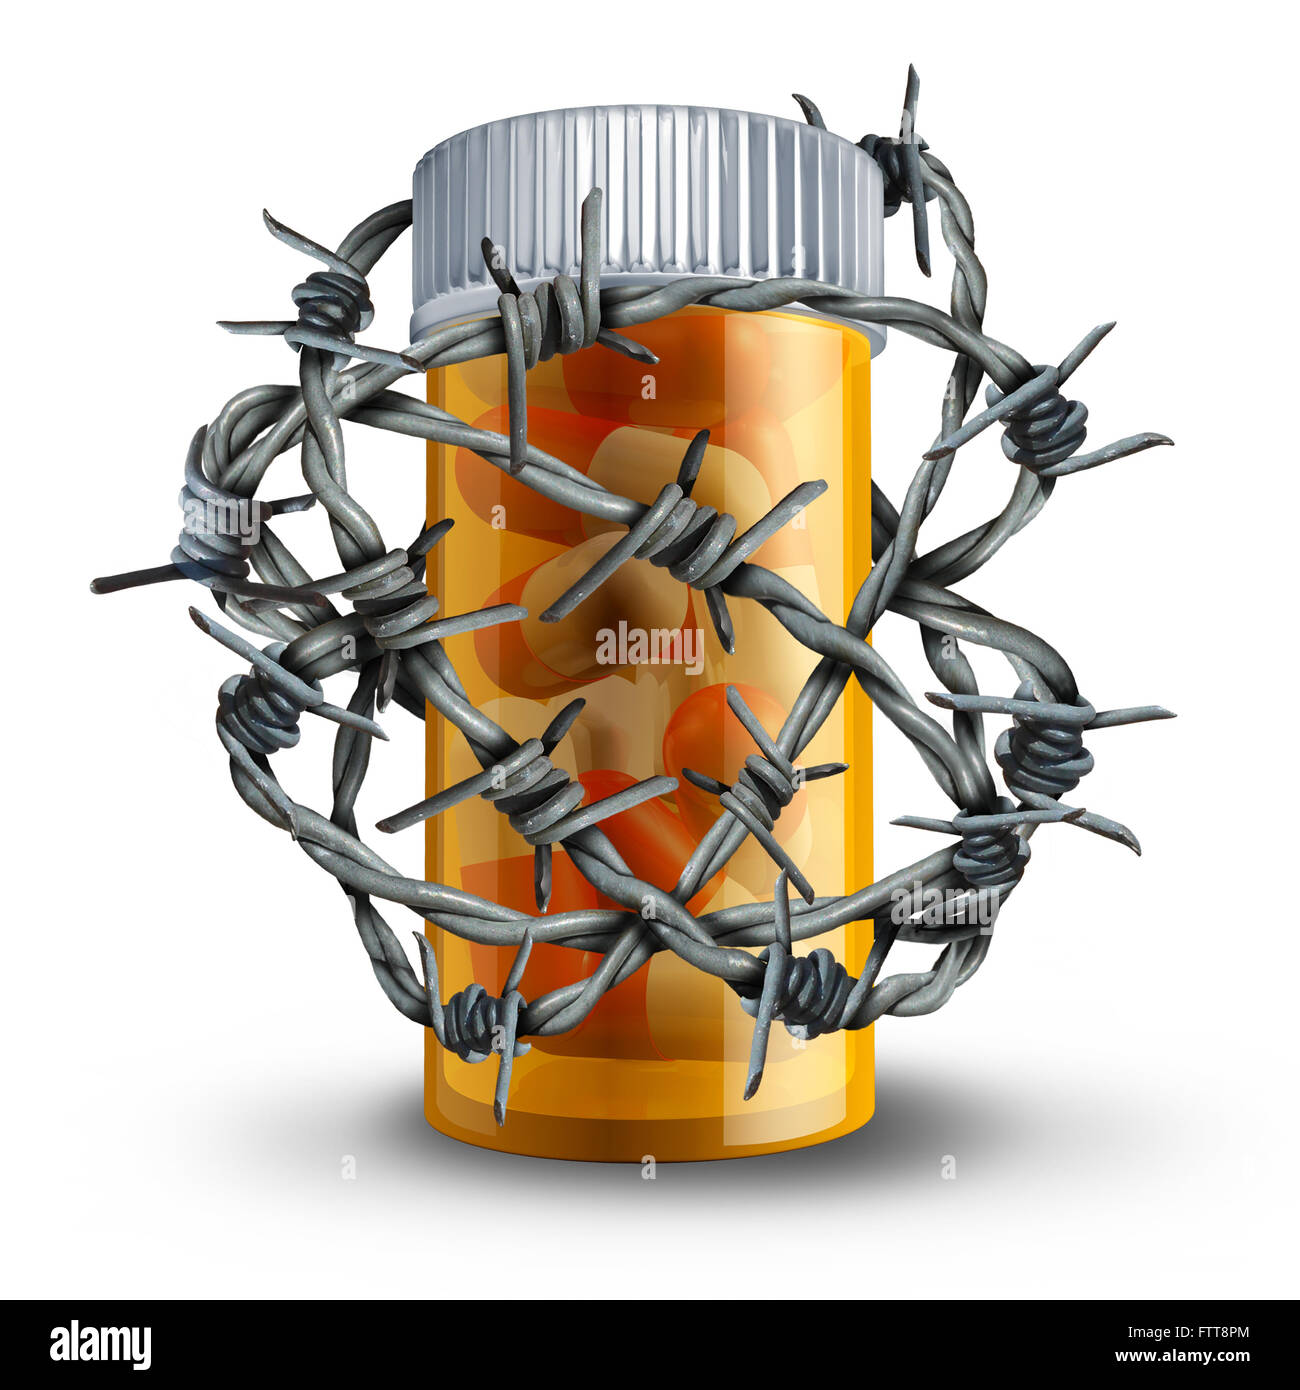 Verschreibungspflichtigen Medikament Sicherheits- und Medikamente Sicherheitskonzept als 3D Flasche Pillen verpackt mit Stacheldraht oder Stacheldraht als medizinische Metapher für Apotheke Medikamente Risiko- und Dosierung Gefahr. Stockfoto